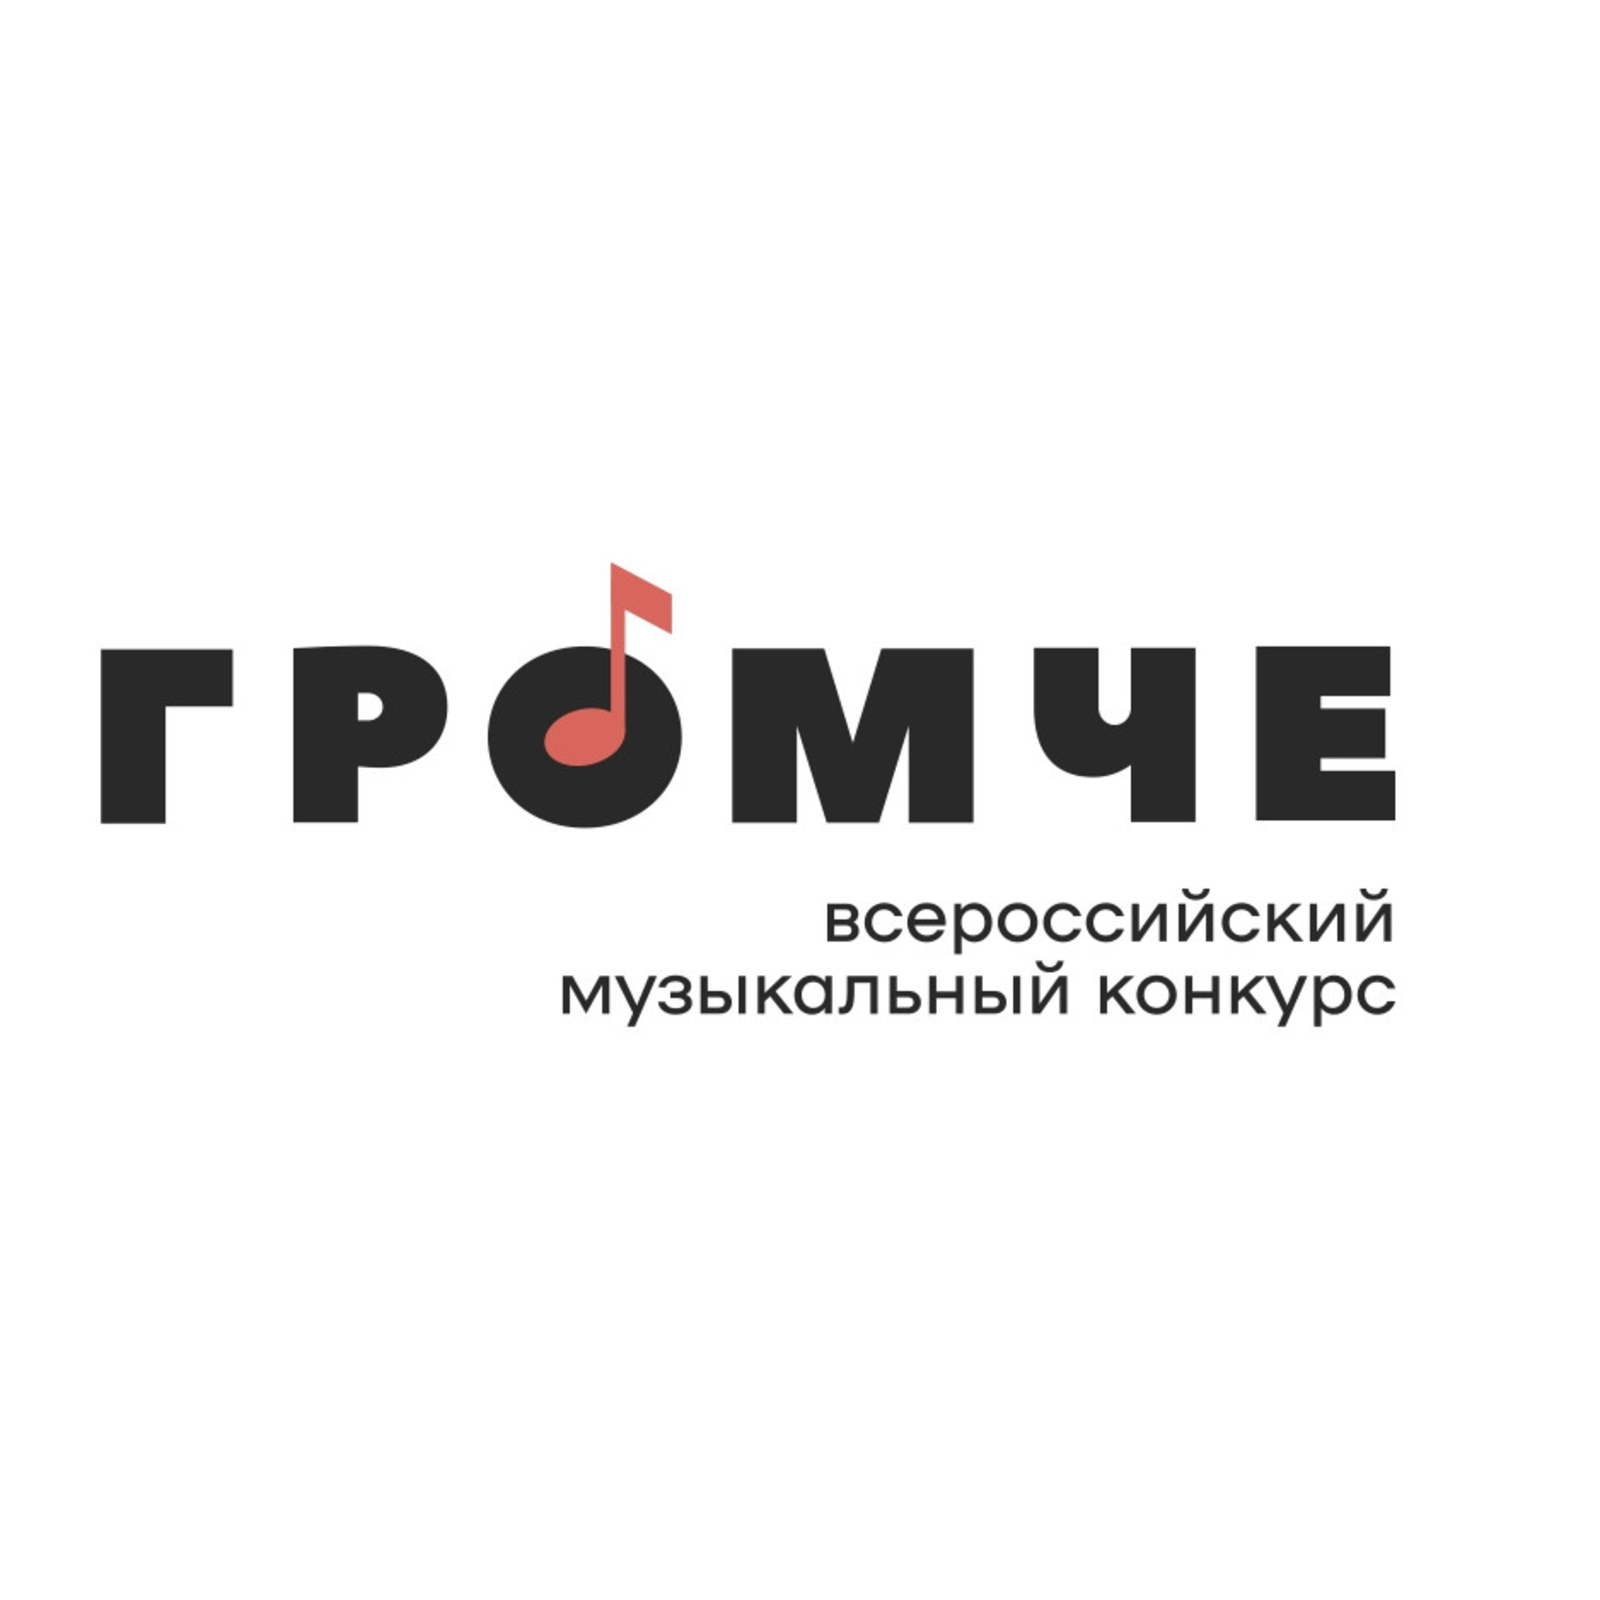 Завершается приём заявок на Всероссийский конкурс авторов и молодых исполнителей «Громче!»